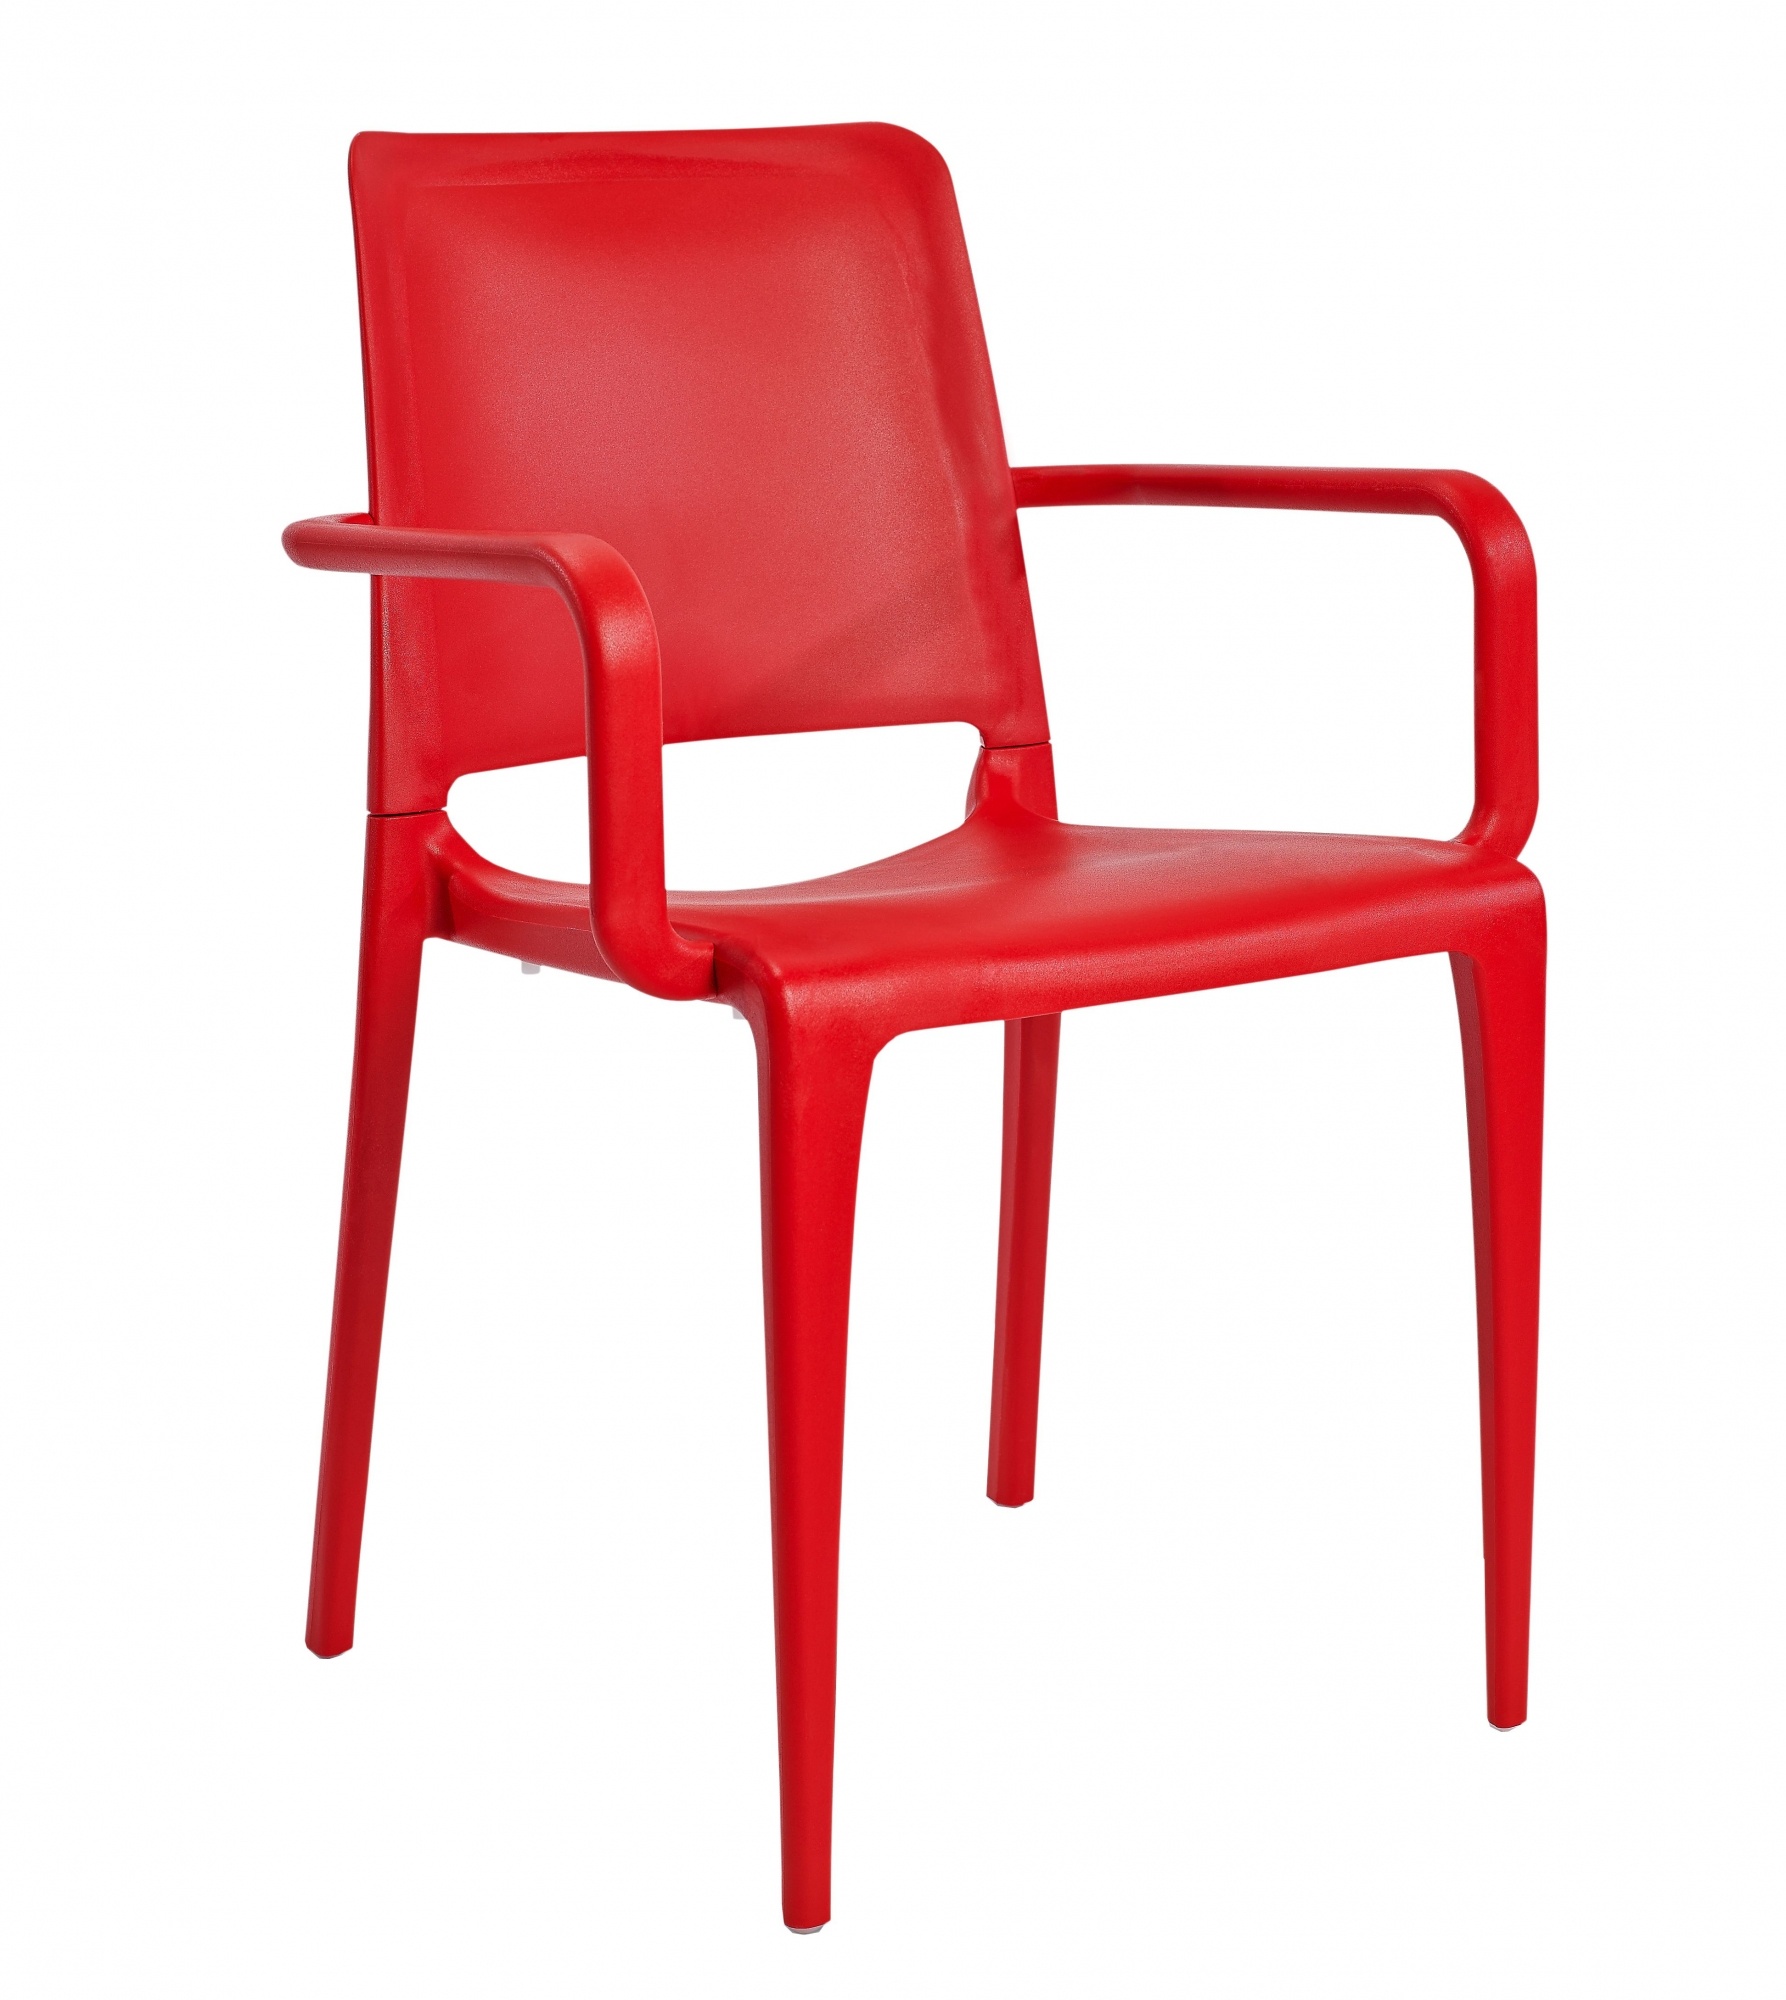 Czerwone krzesła z podłokietnikami